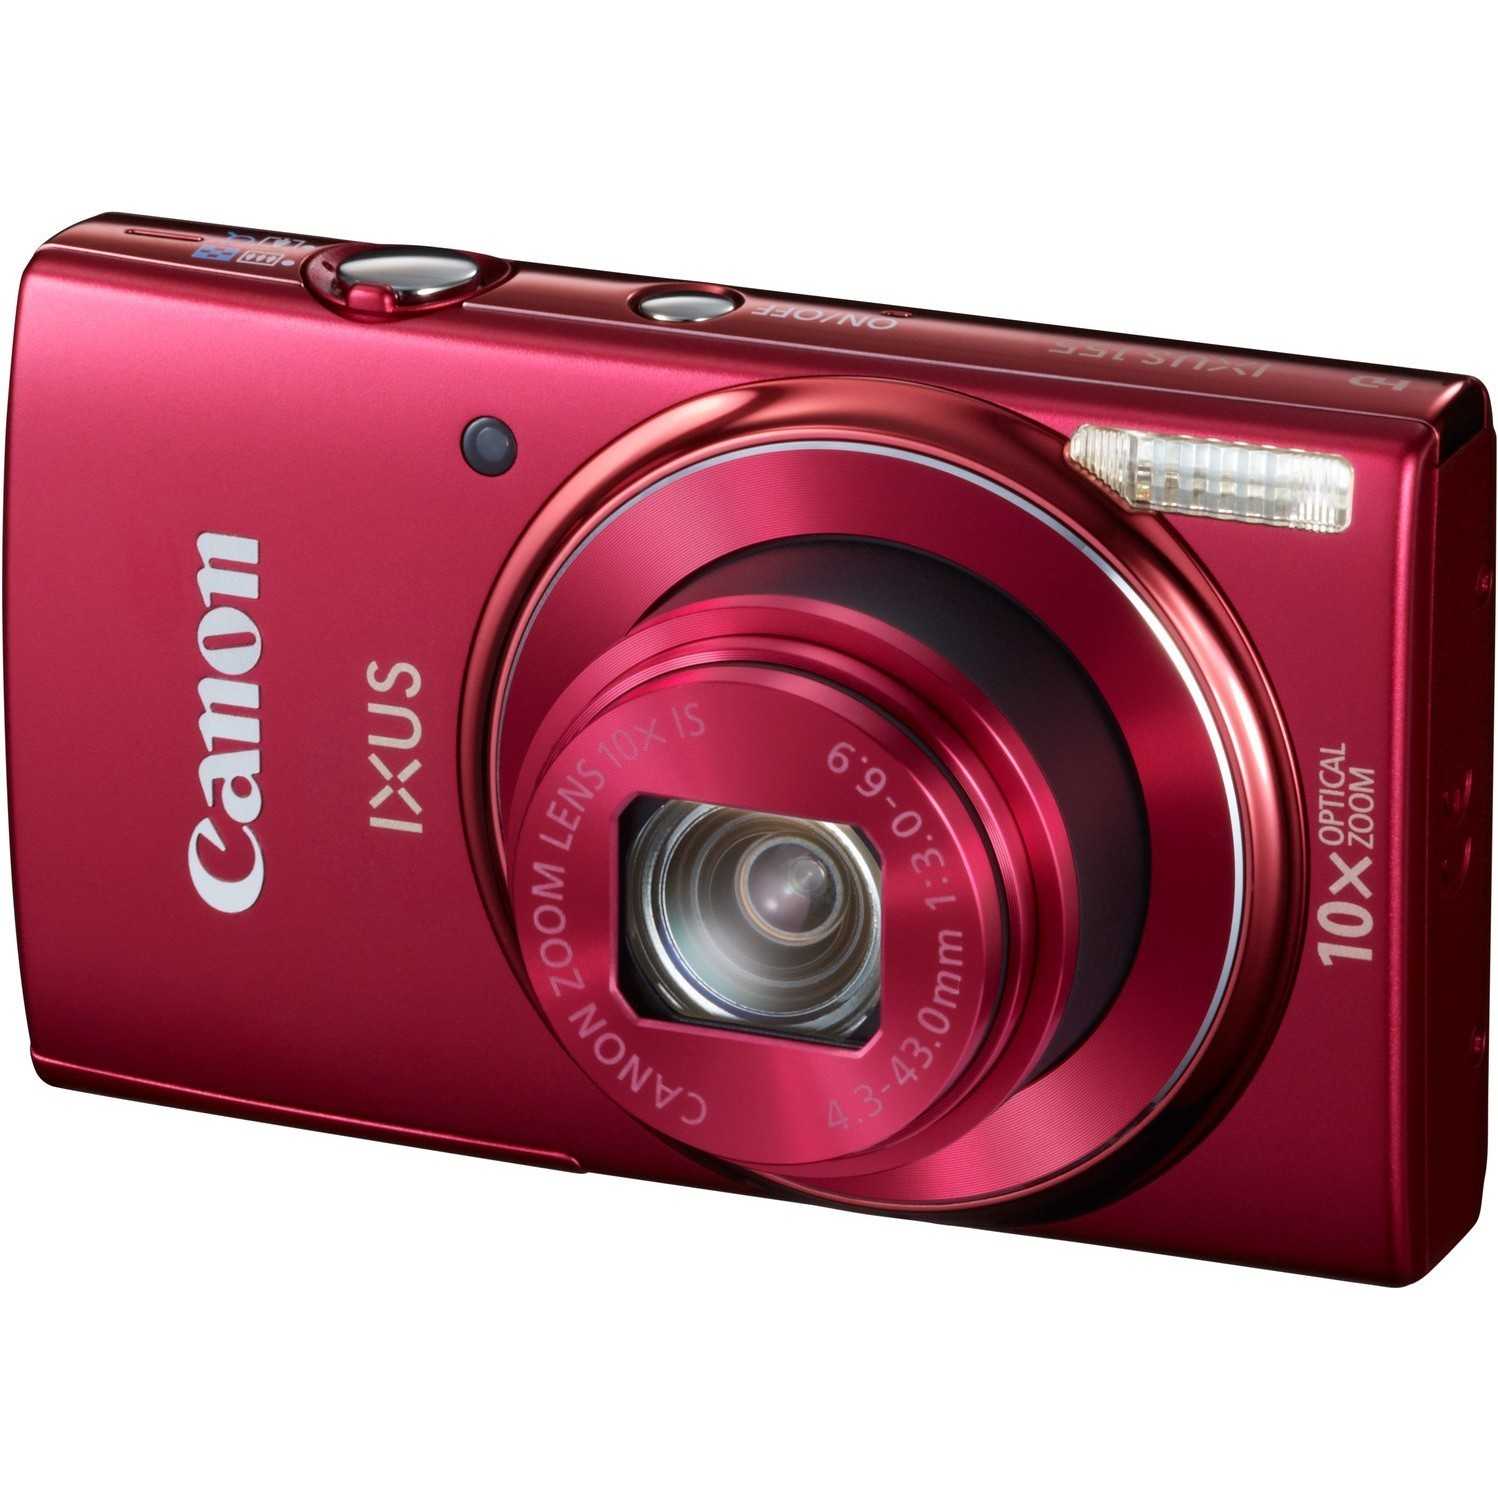 Canon digital ixus 155 (черный) - купить , скидки, цена, отзывы, обзор, характеристики - фотоаппараты цифровые